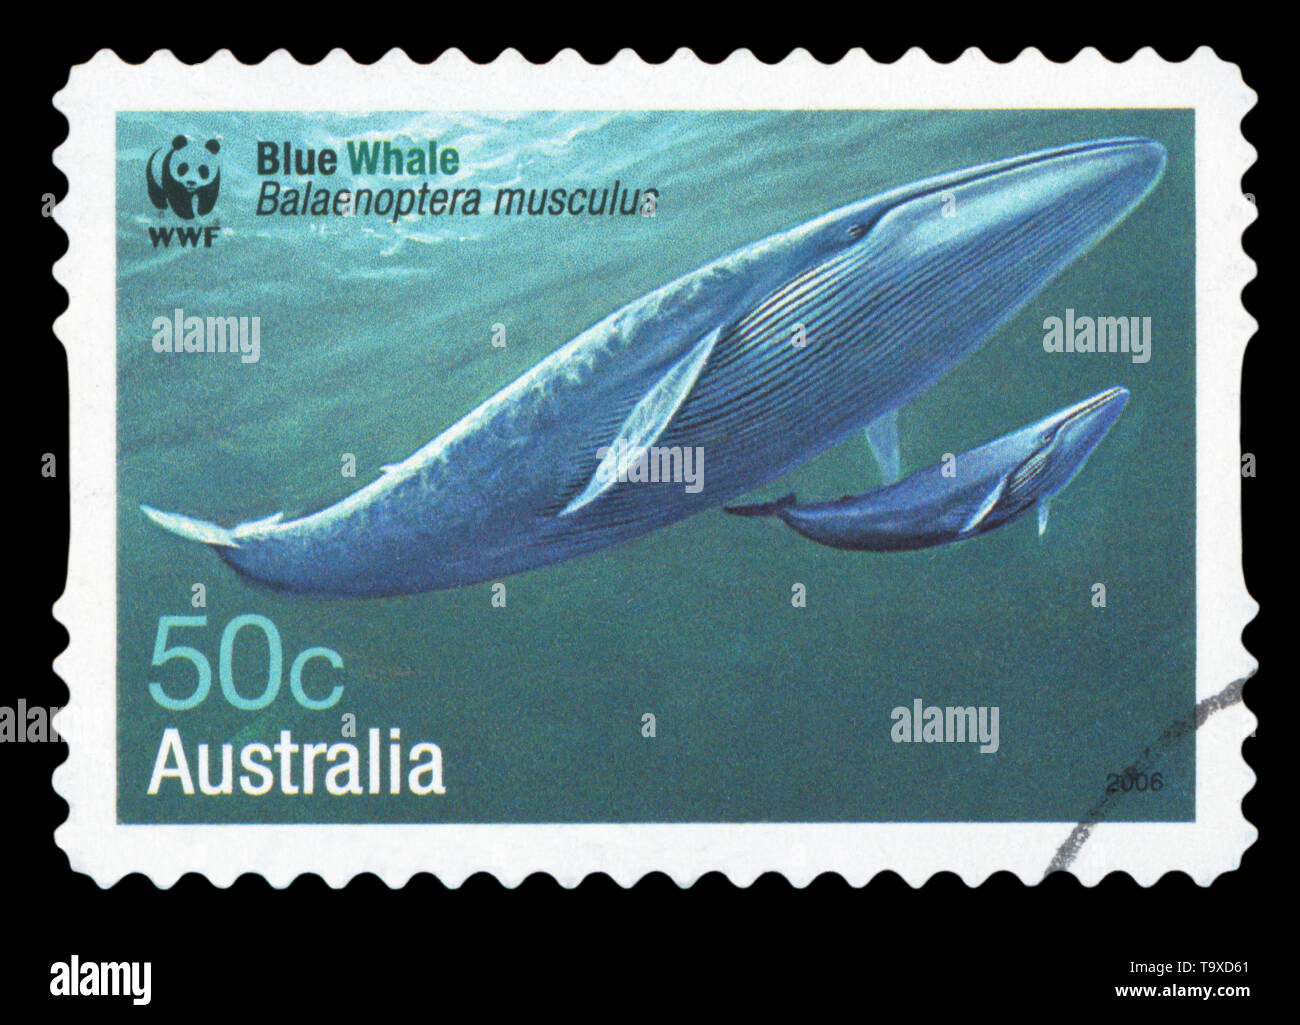 L'AUSTRALIE - circa 2006 : timbre imprimé en Australie montre - Rorqual bleu Balaenoptera musculus, vers 2006. Banque D'Images